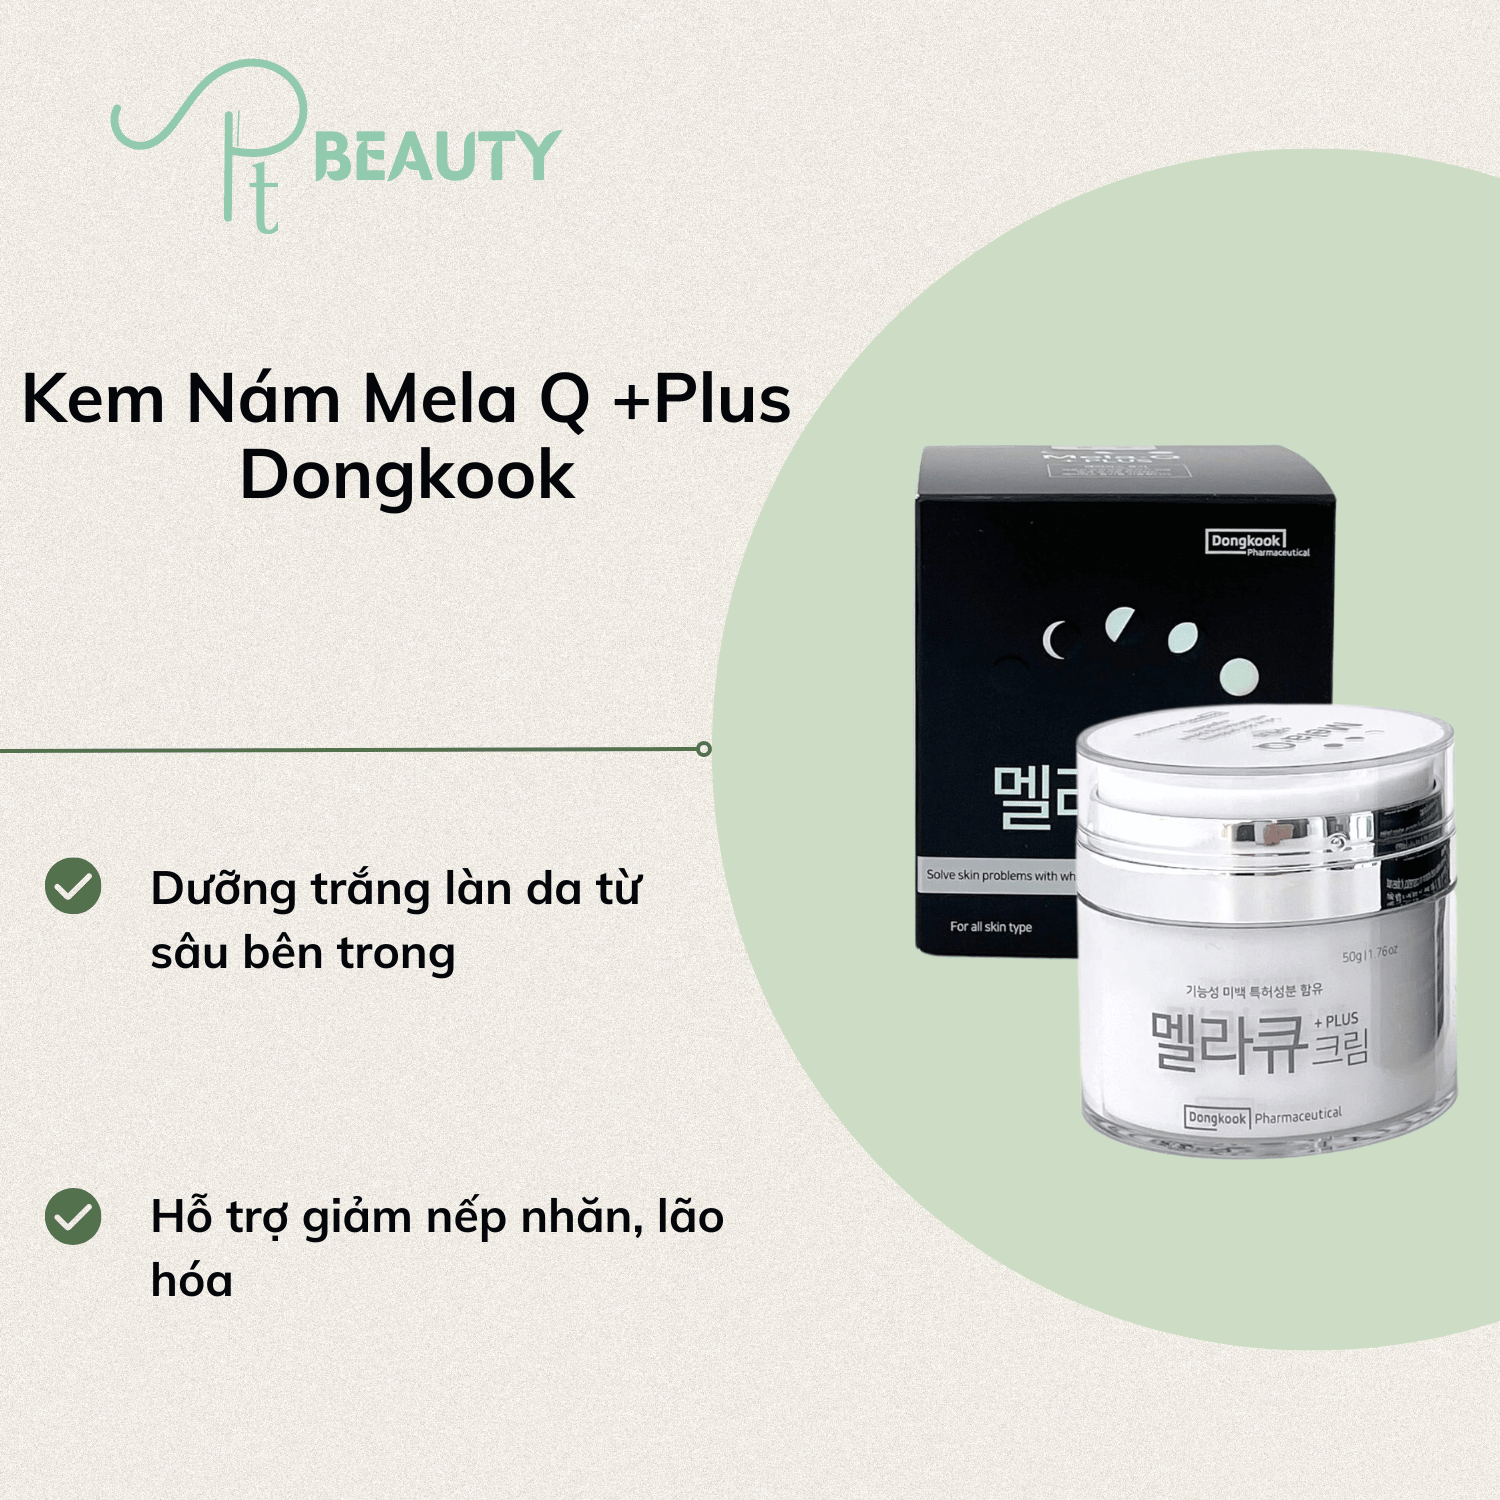 Kem Dưỡng Dongkook Mờ Thâm Nám Mela Q Plus Cream